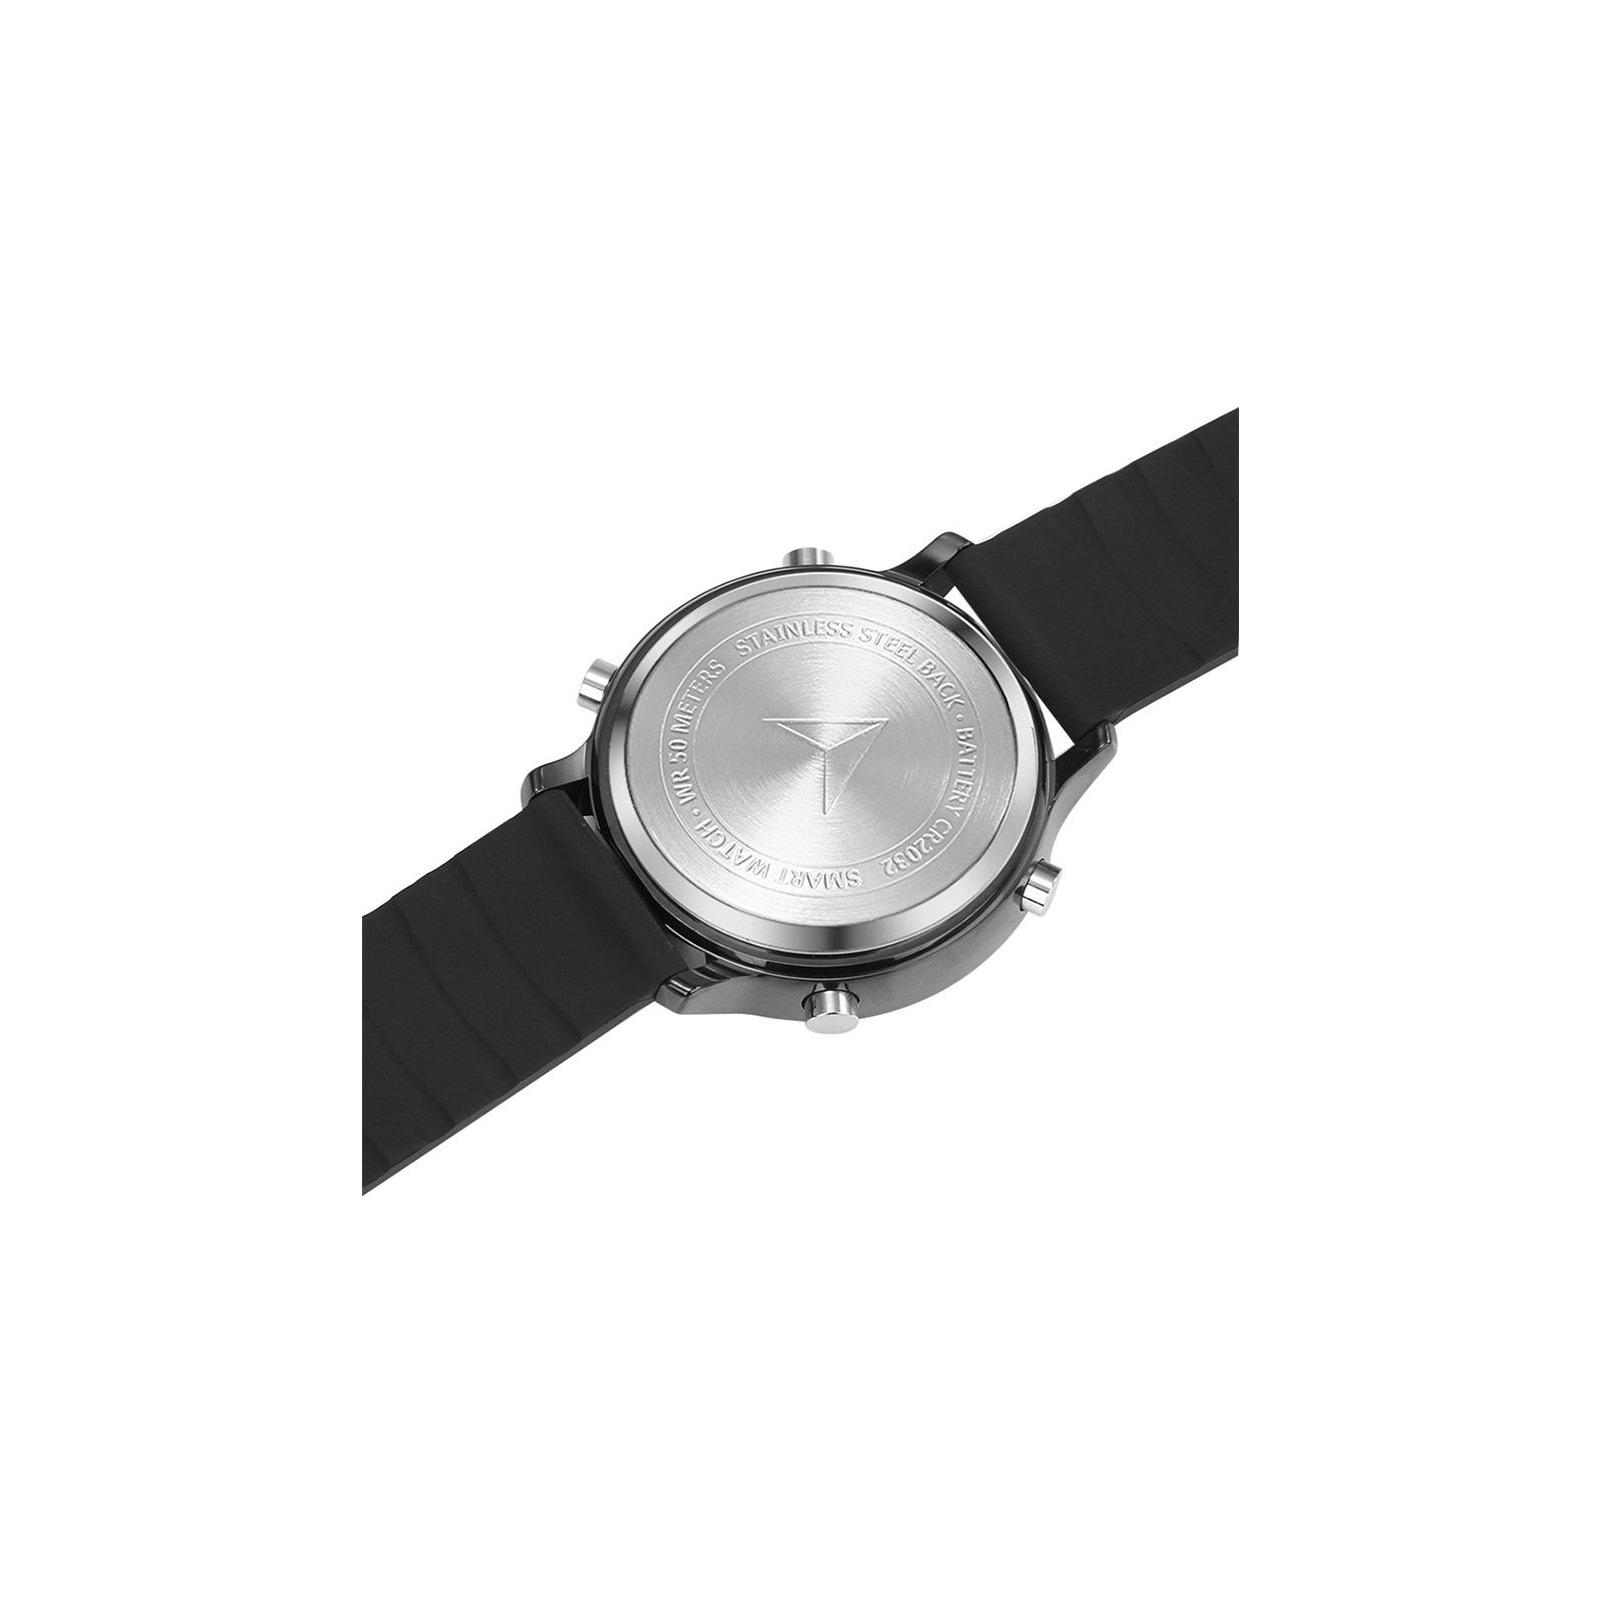 Смарт-часы UWatch EX18 Orange (F_53982) изображение 2